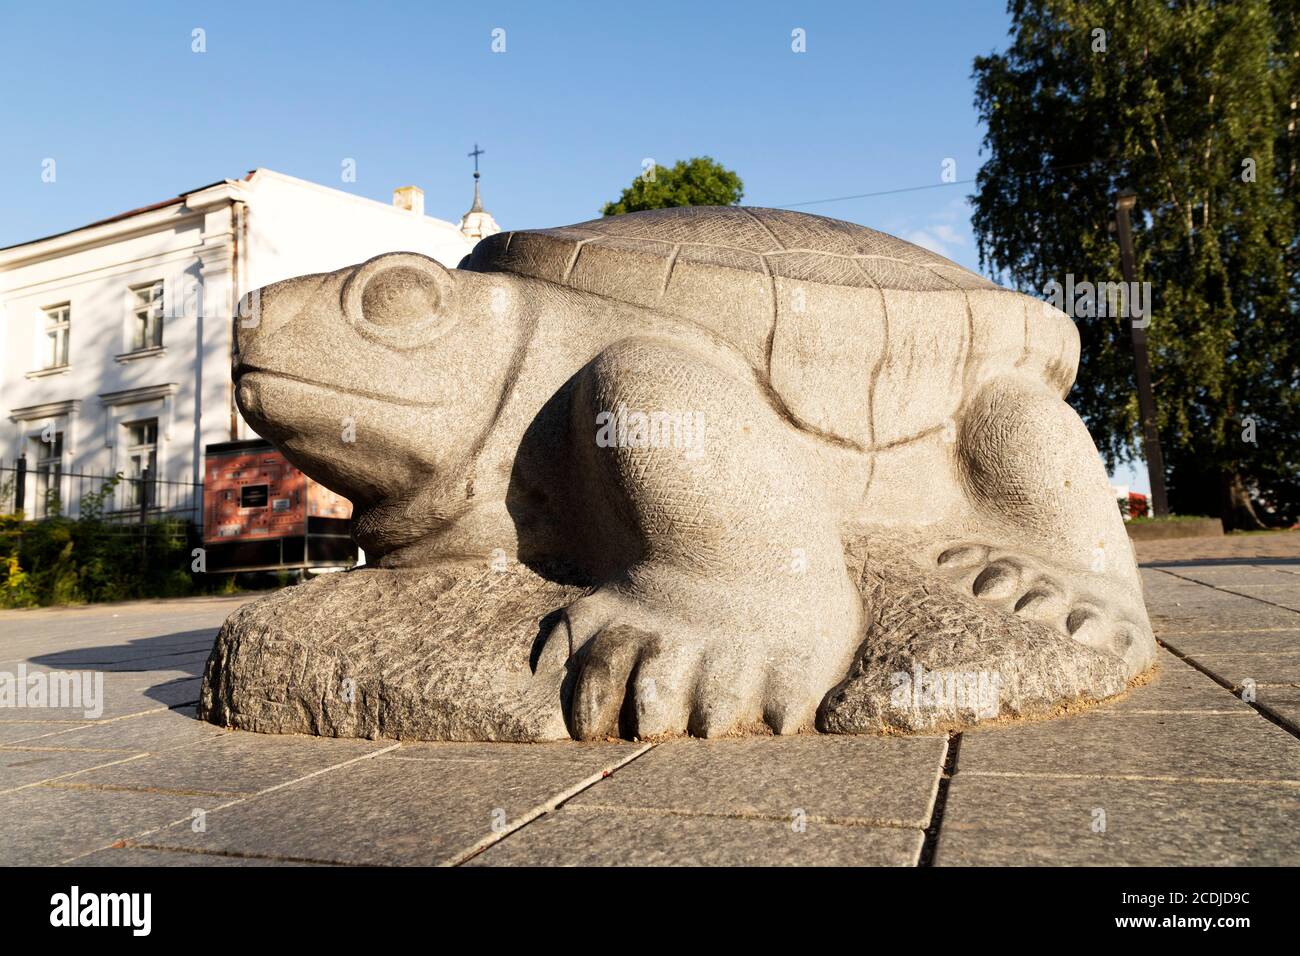 Escultura de la tortuga en Daugavpils, Letonia. La escultura está en Rigas iela, una calle en el corazón de la segunda ciudad de Letonia. Foto de stock